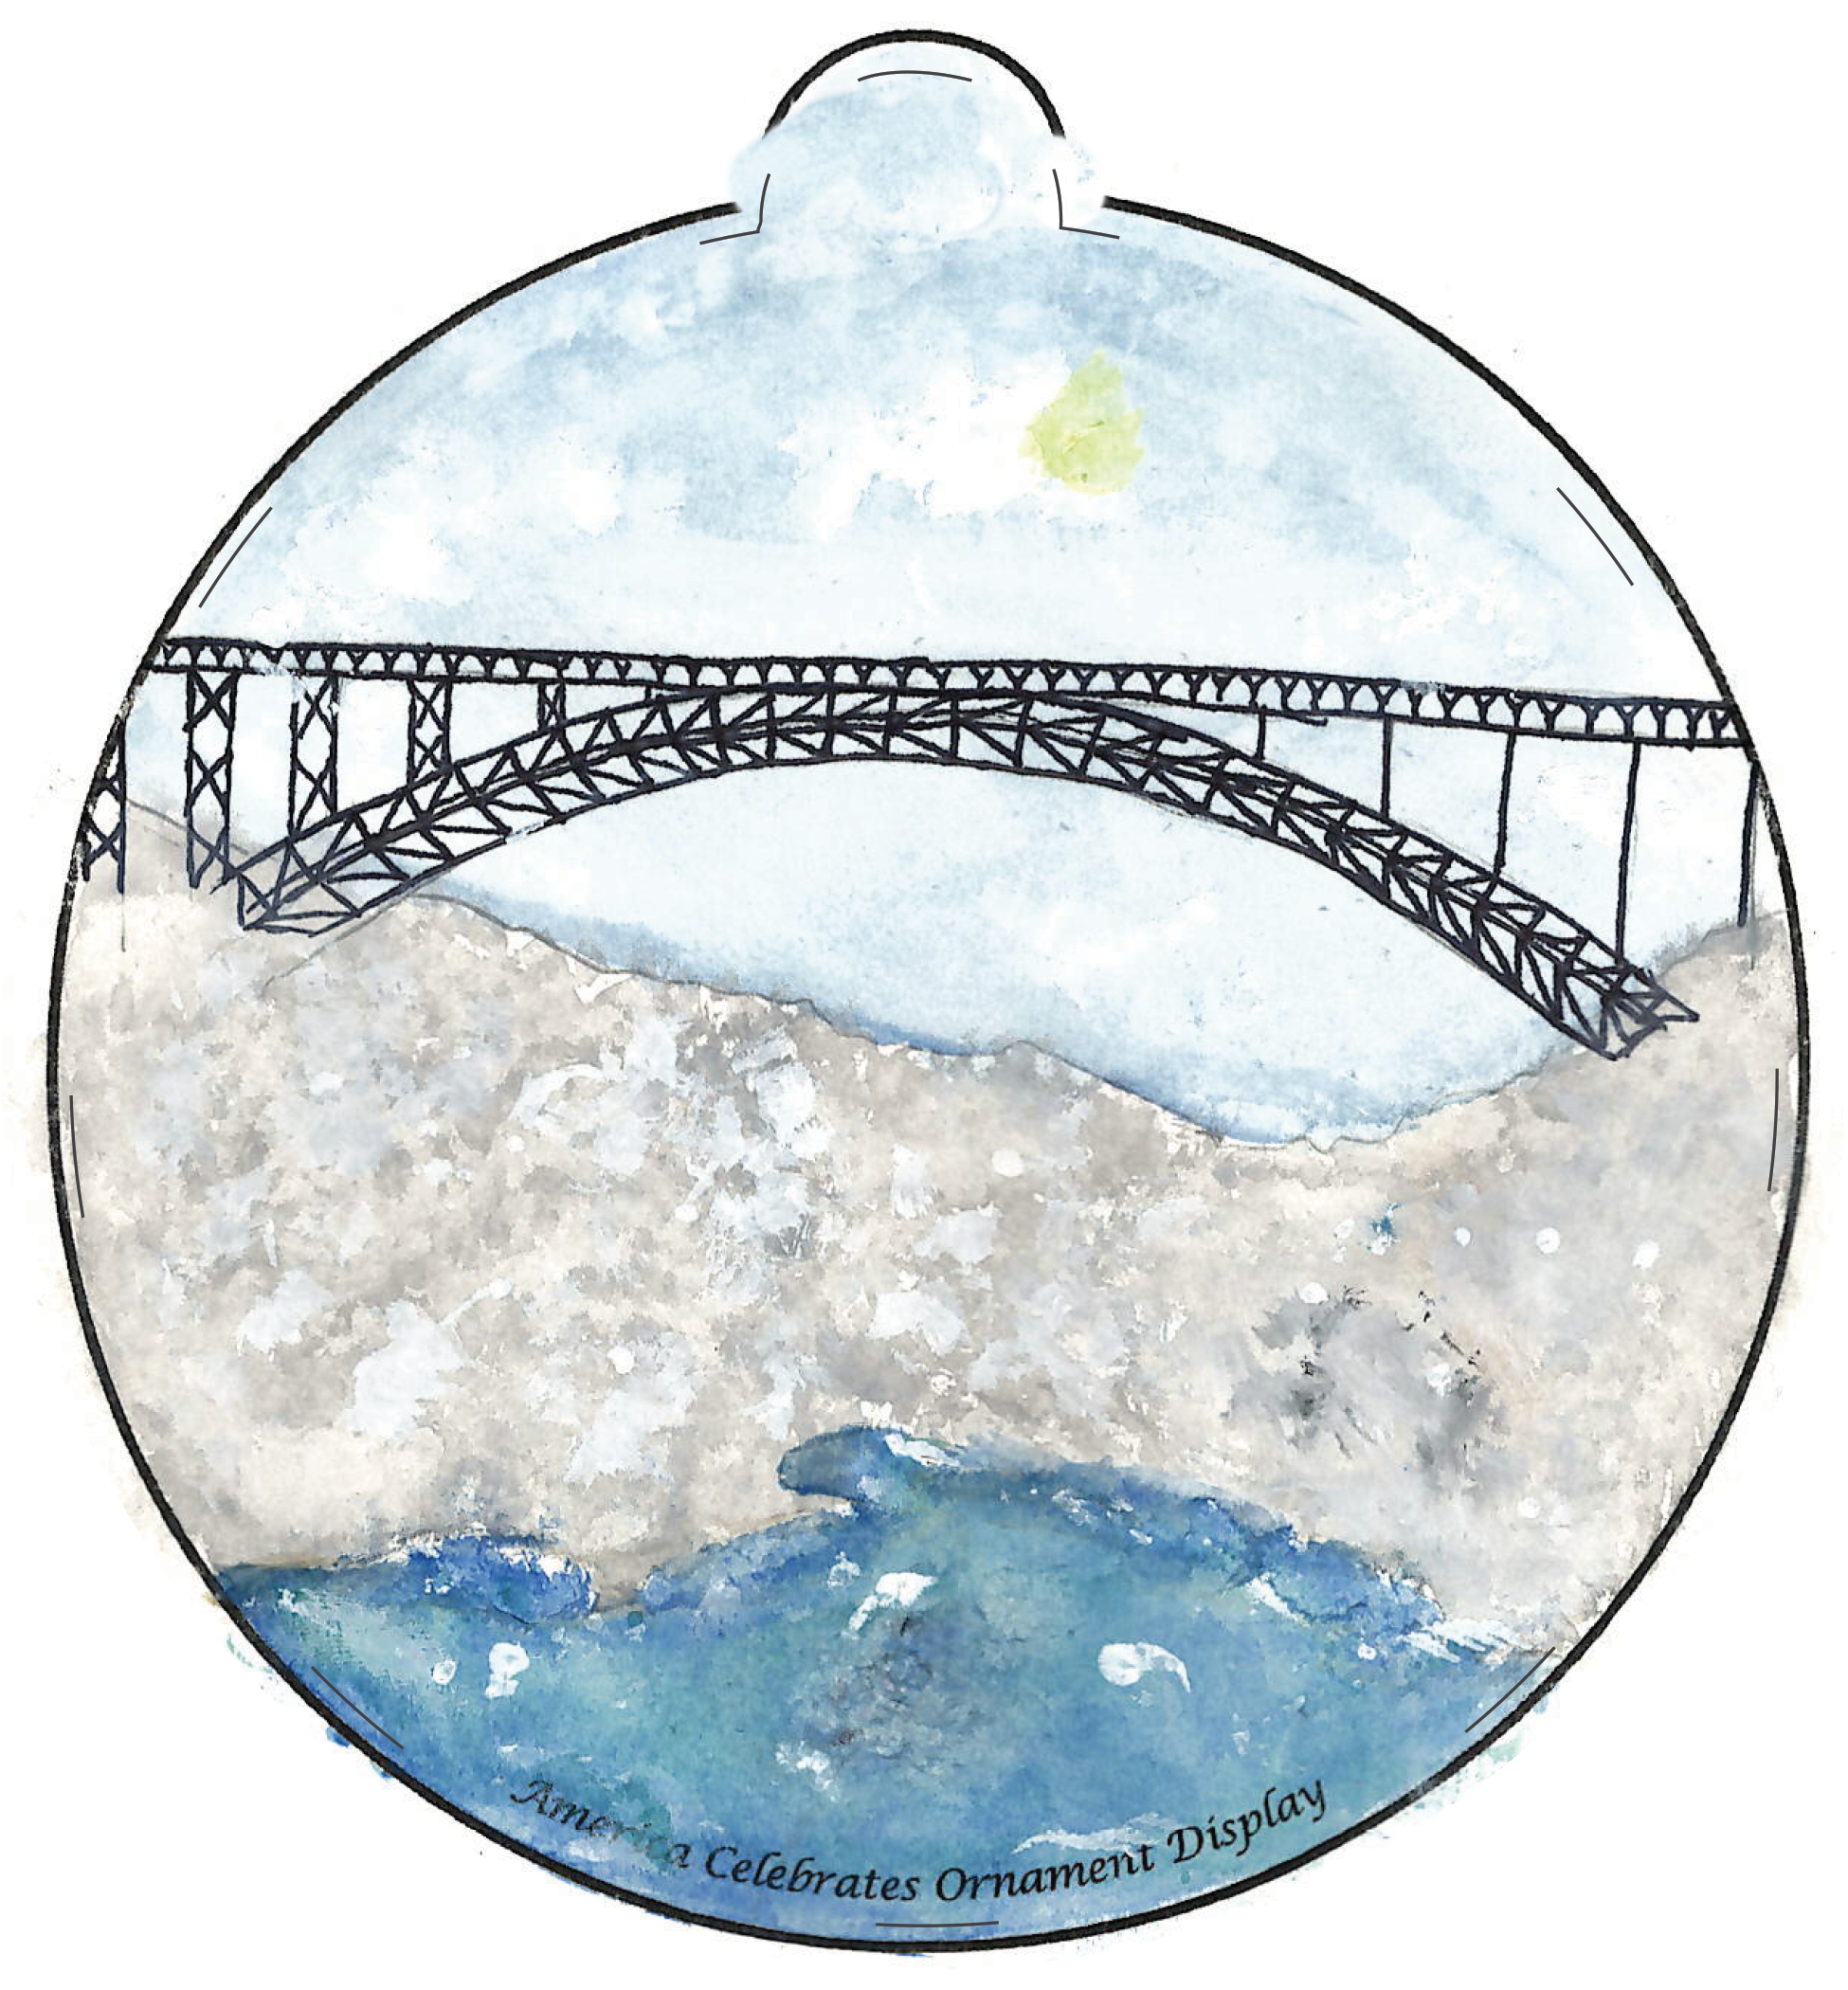 Ornament depicting a steel bridge crossing a river